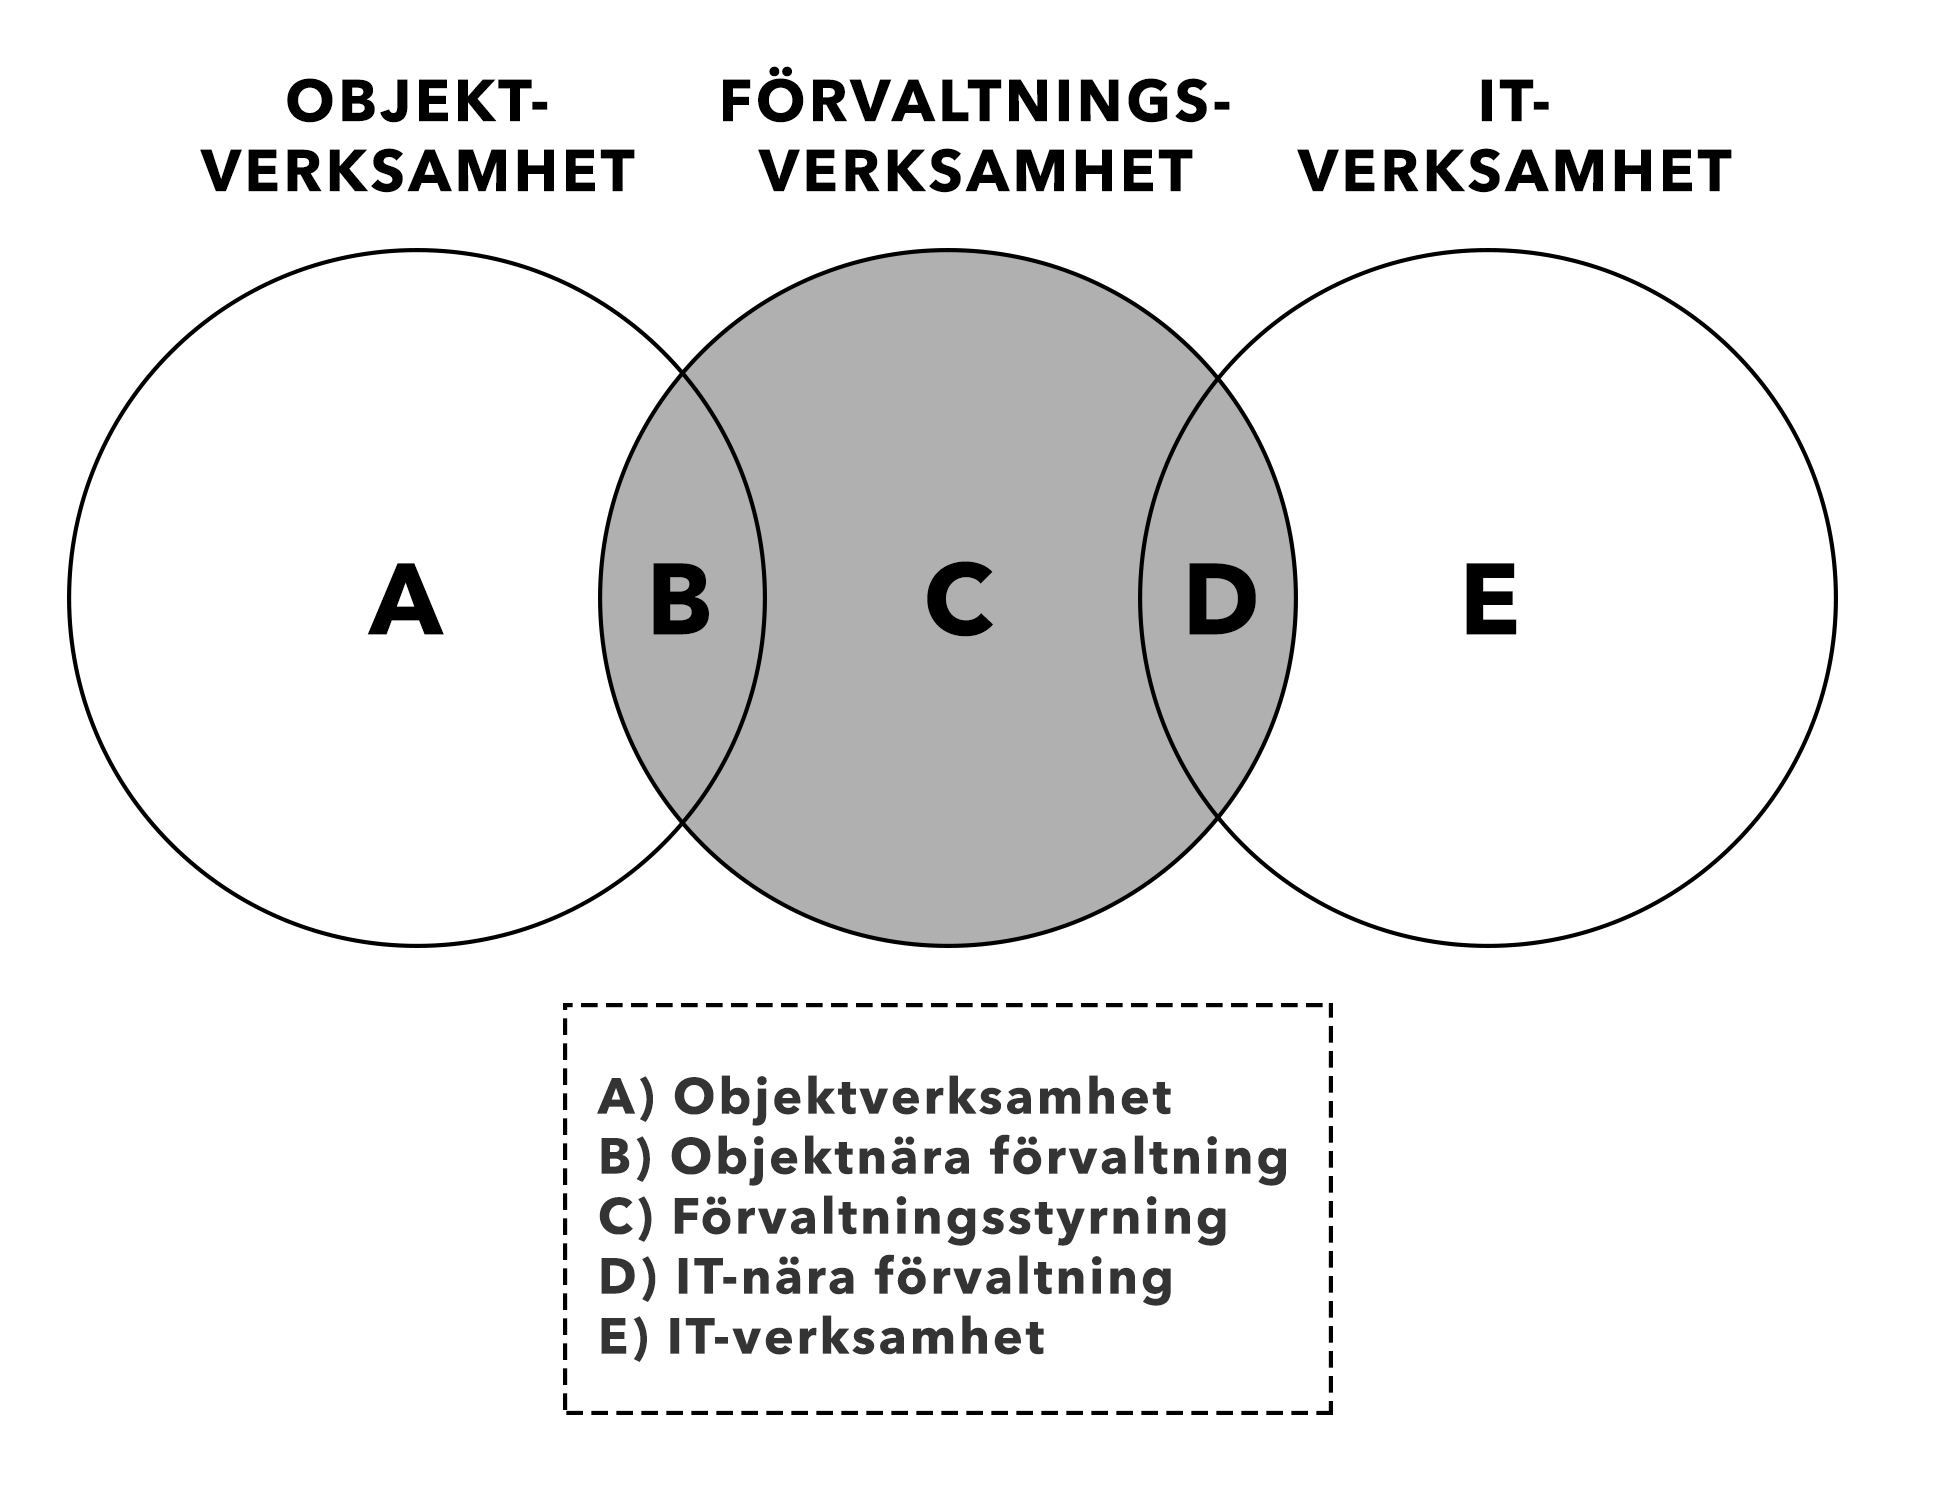 Welander, 2007). Figur 1 nedan visar hur dessa förhåller sig till varandra. Figur 1. Relation mellan objekt-, förvaltnings- och IT-verksamhet. (Källa: Nordström & Welander, 2007, s.